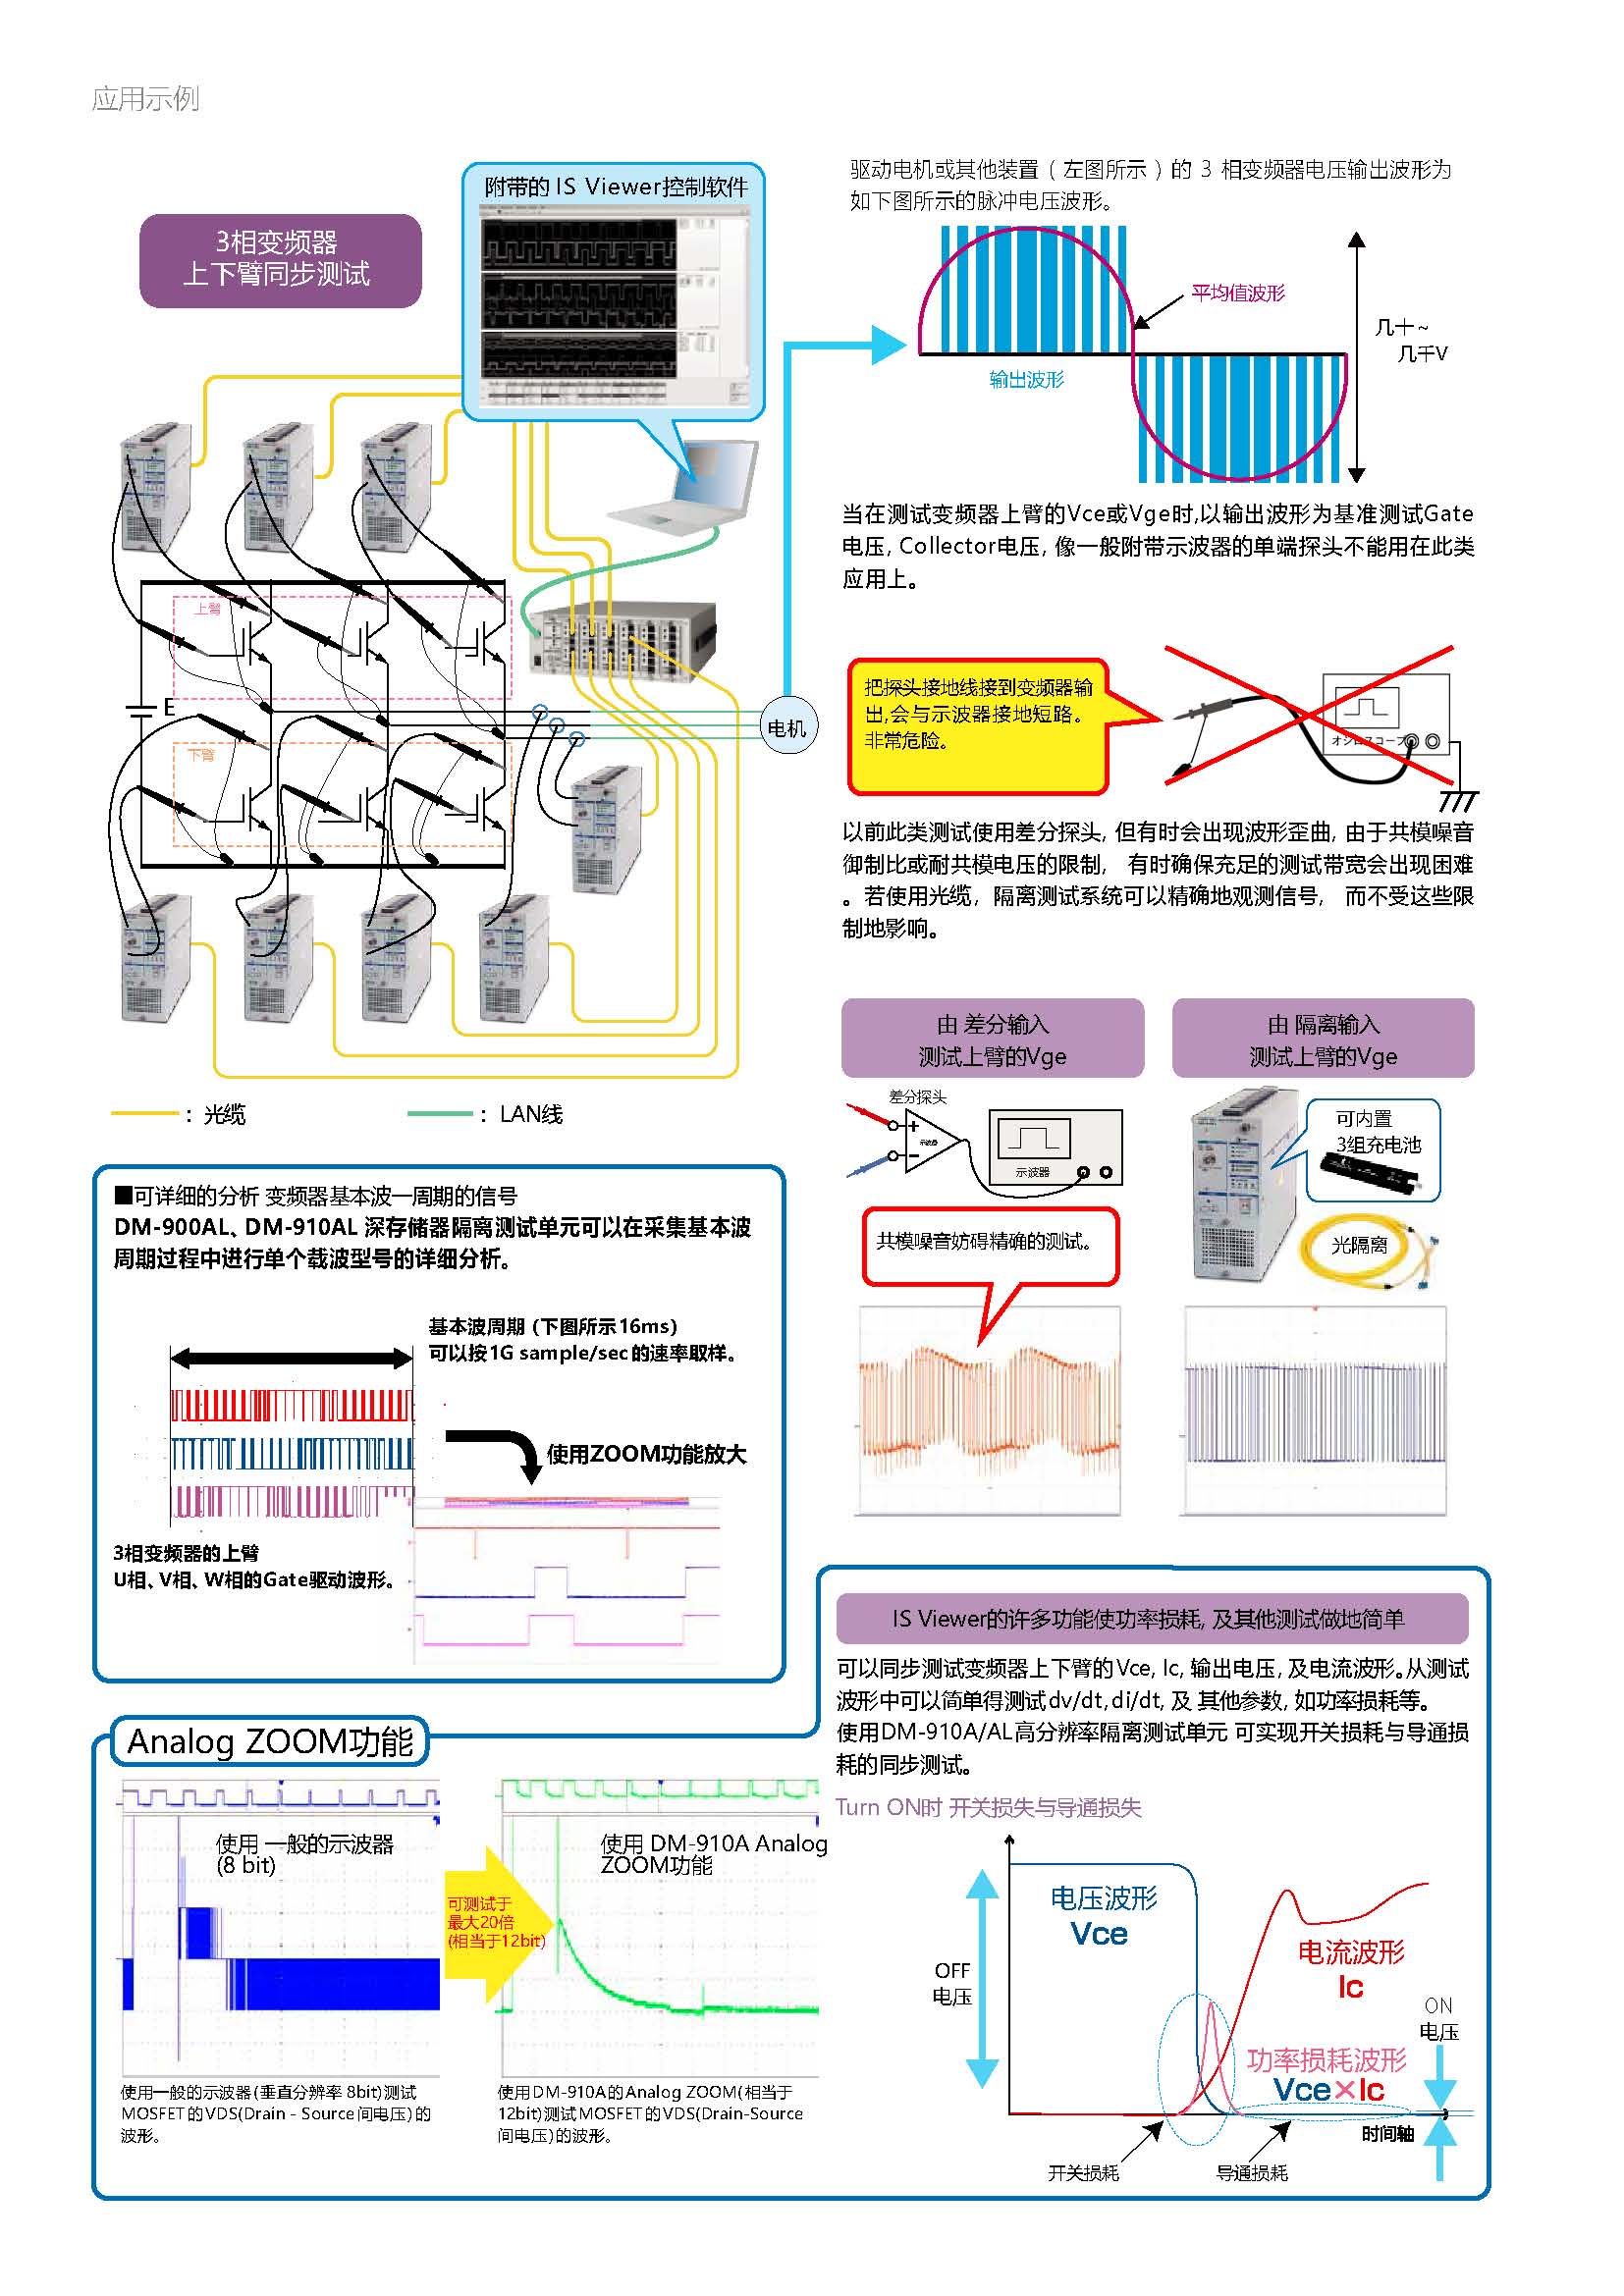 隔离测试系统样本_中文版_201806_页面_2.jpg